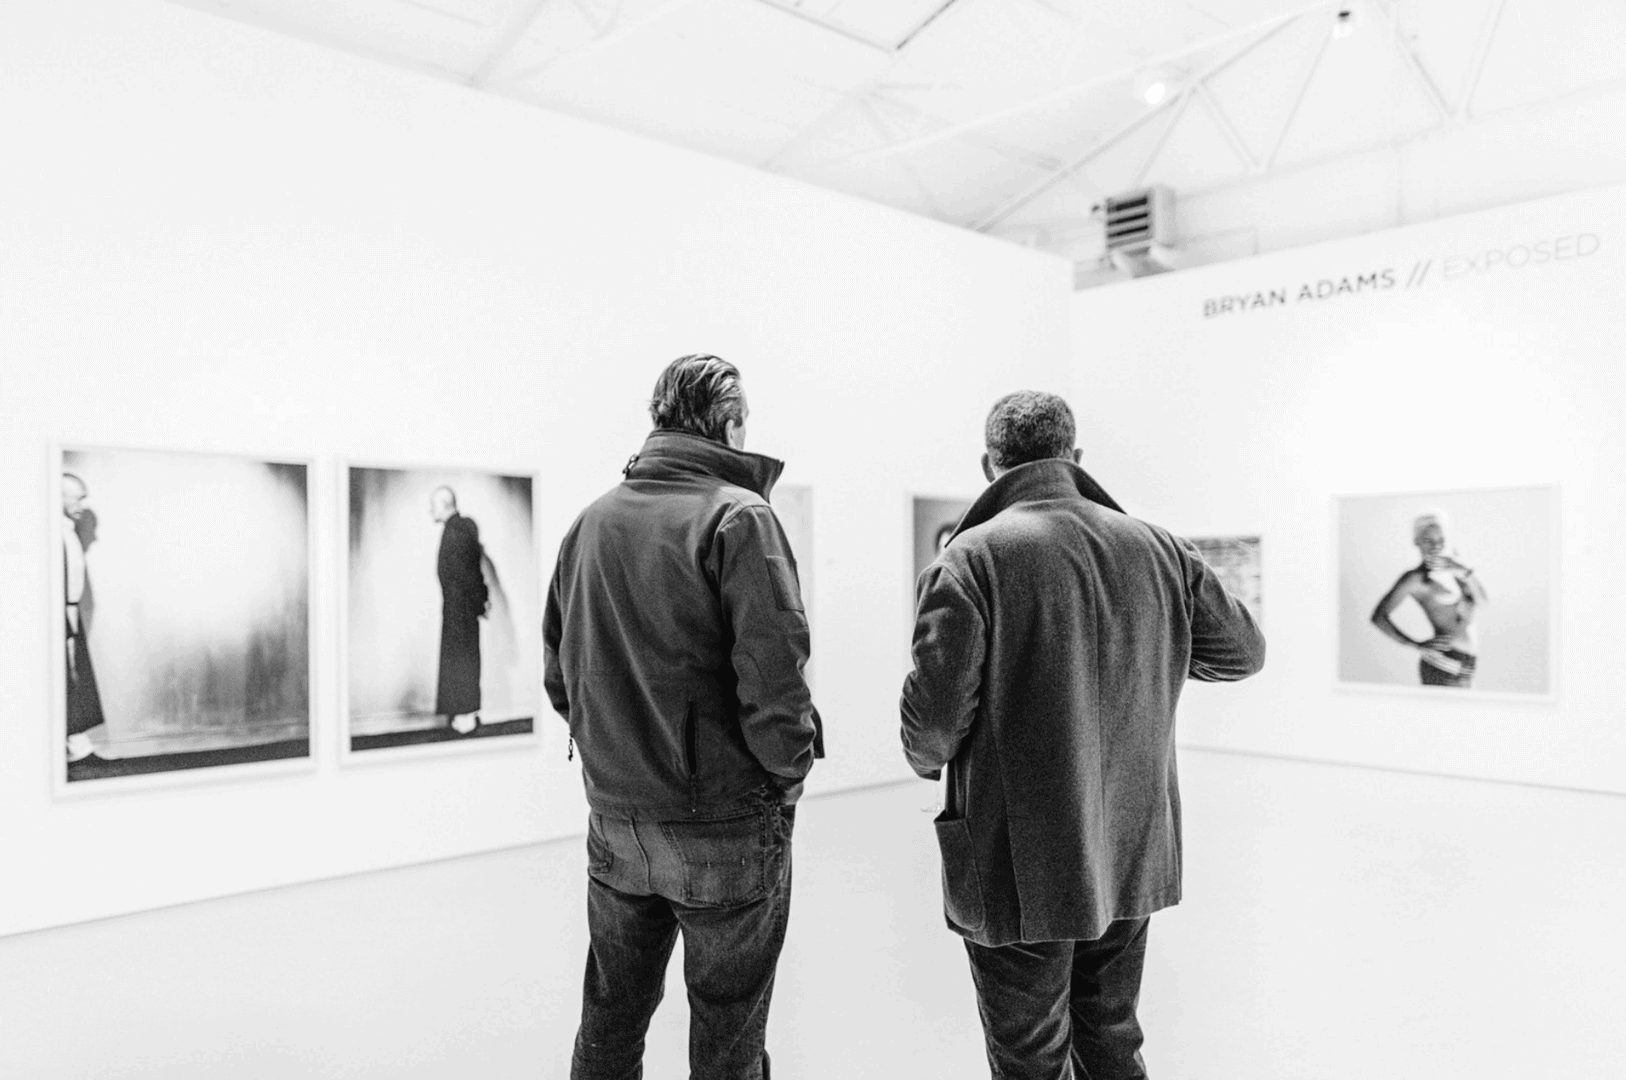 SOLOSHOW BRYAN ADAMS / EXPOSED at WERKHALLEN Galerie REMAGEN ®JanBirkenstock // 2017